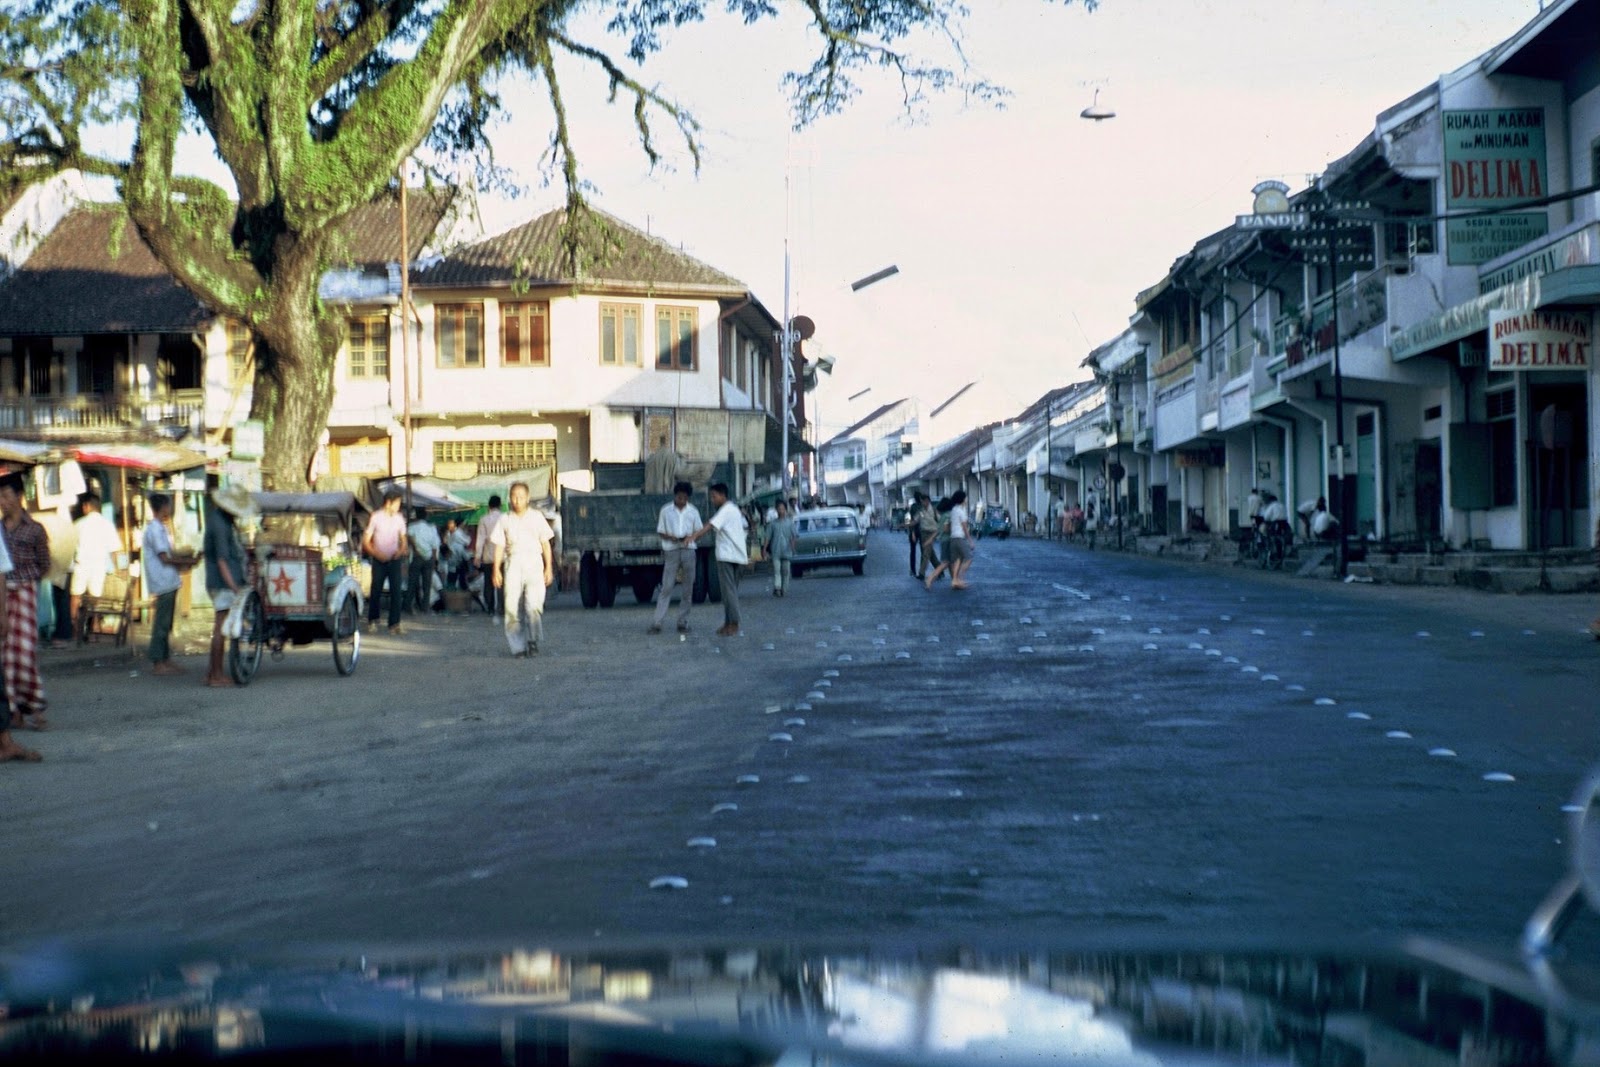 1968 town of Bogor